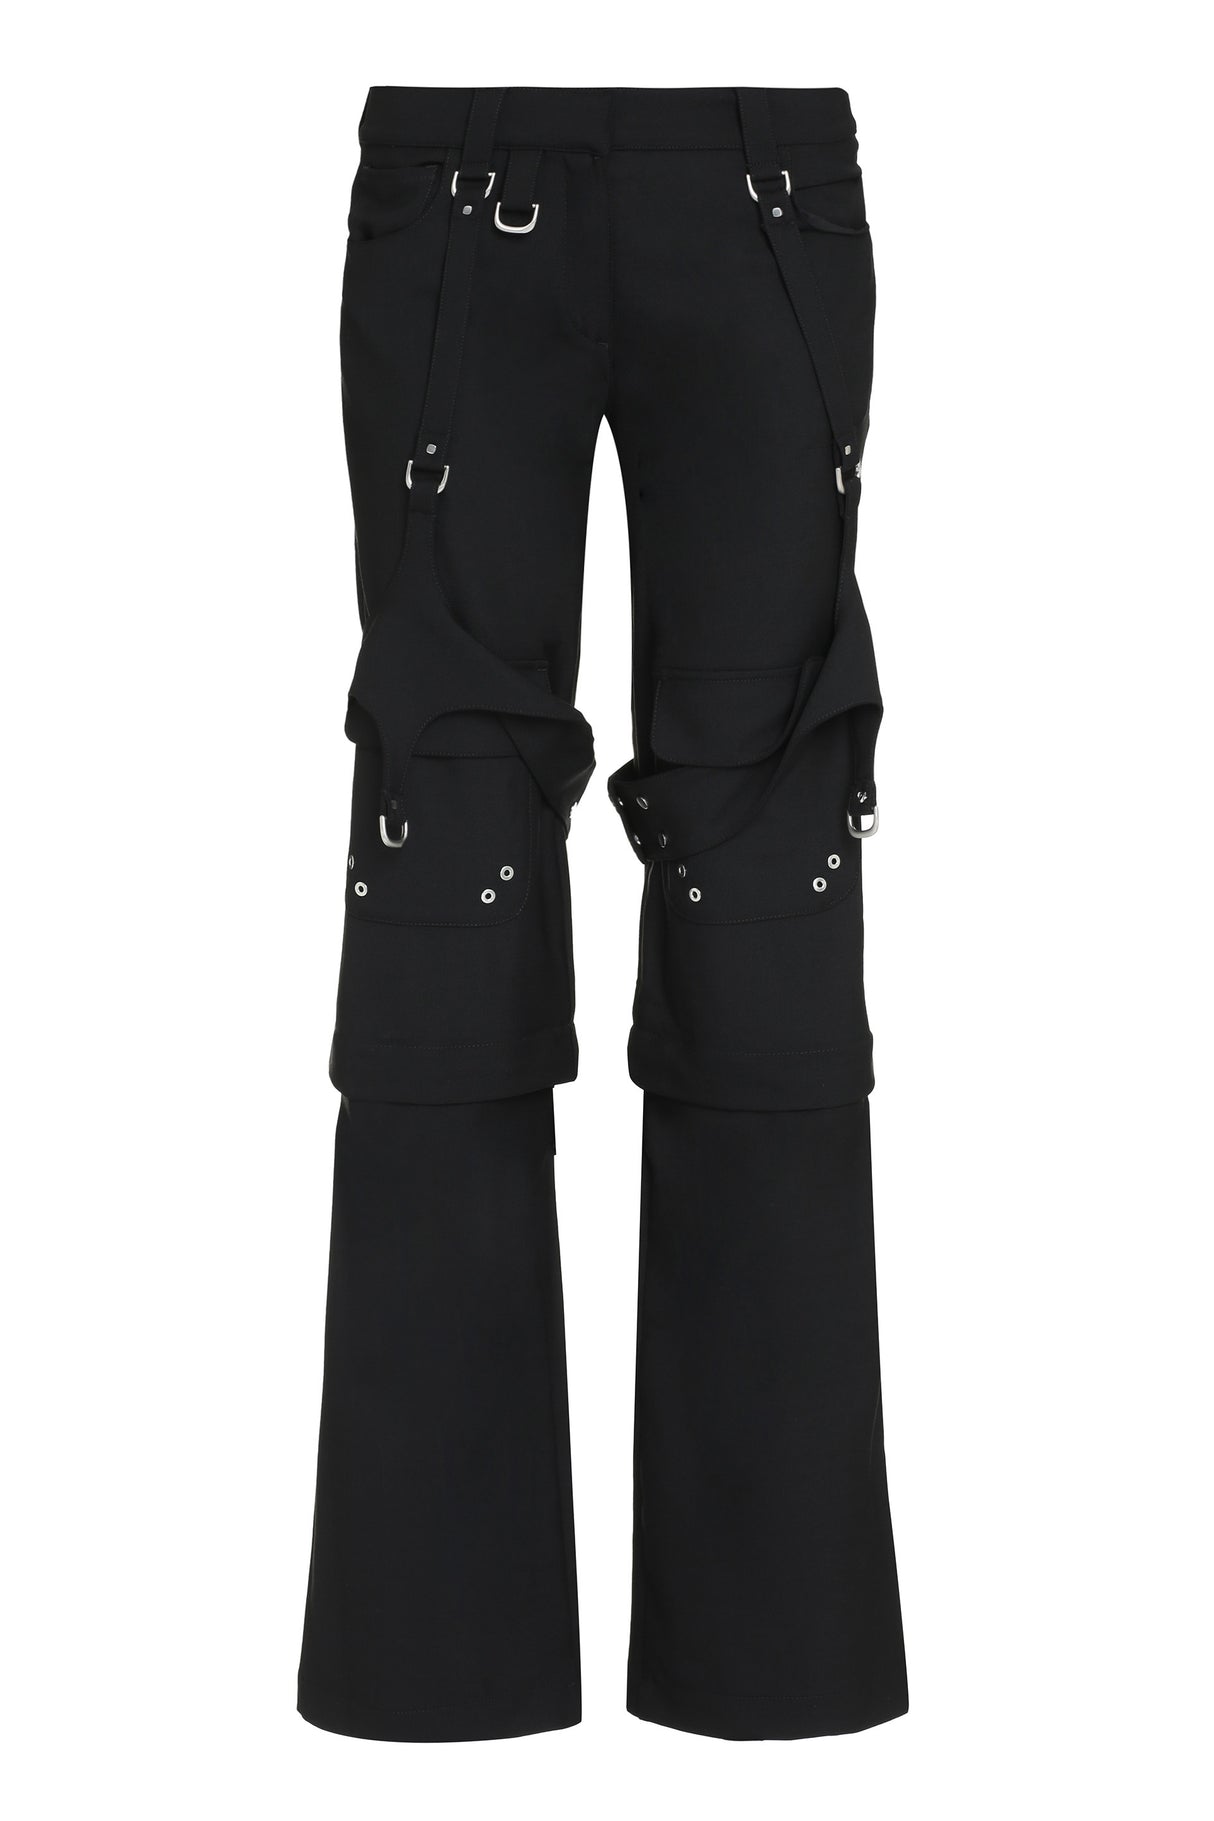 بنطلونات كارجو سوداء بأحزمة أمامية - تصميم متعدد الجيوب - مقاس عادي - للنساء